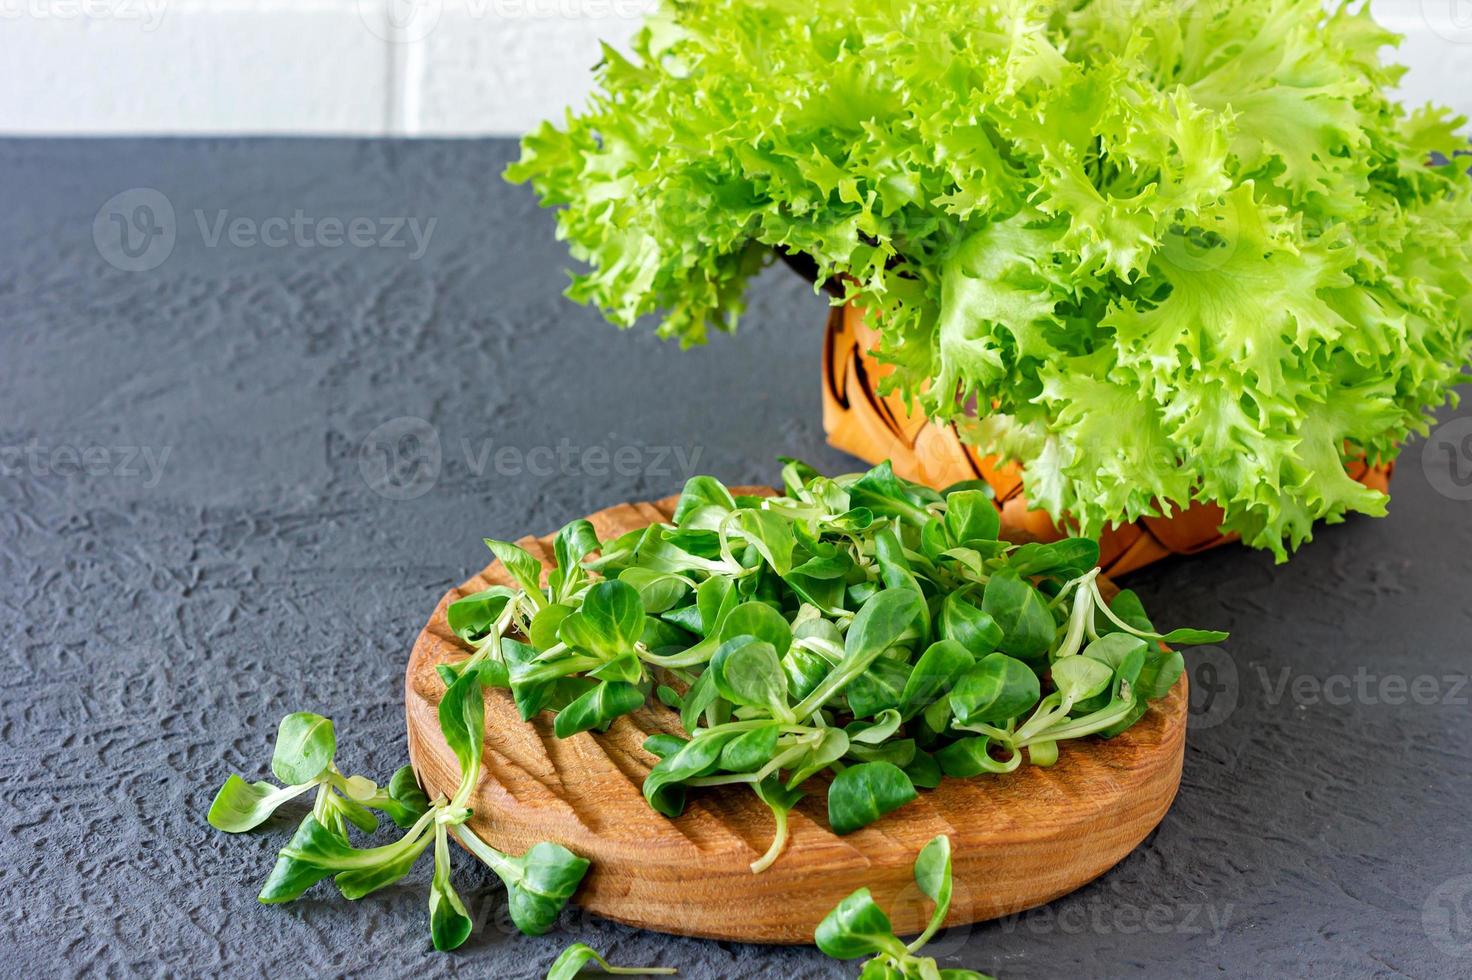 valeriaanella sprinkhaan, maïs salade,lams sla. vers groen maïs salade bladeren Aan houten bureau foto